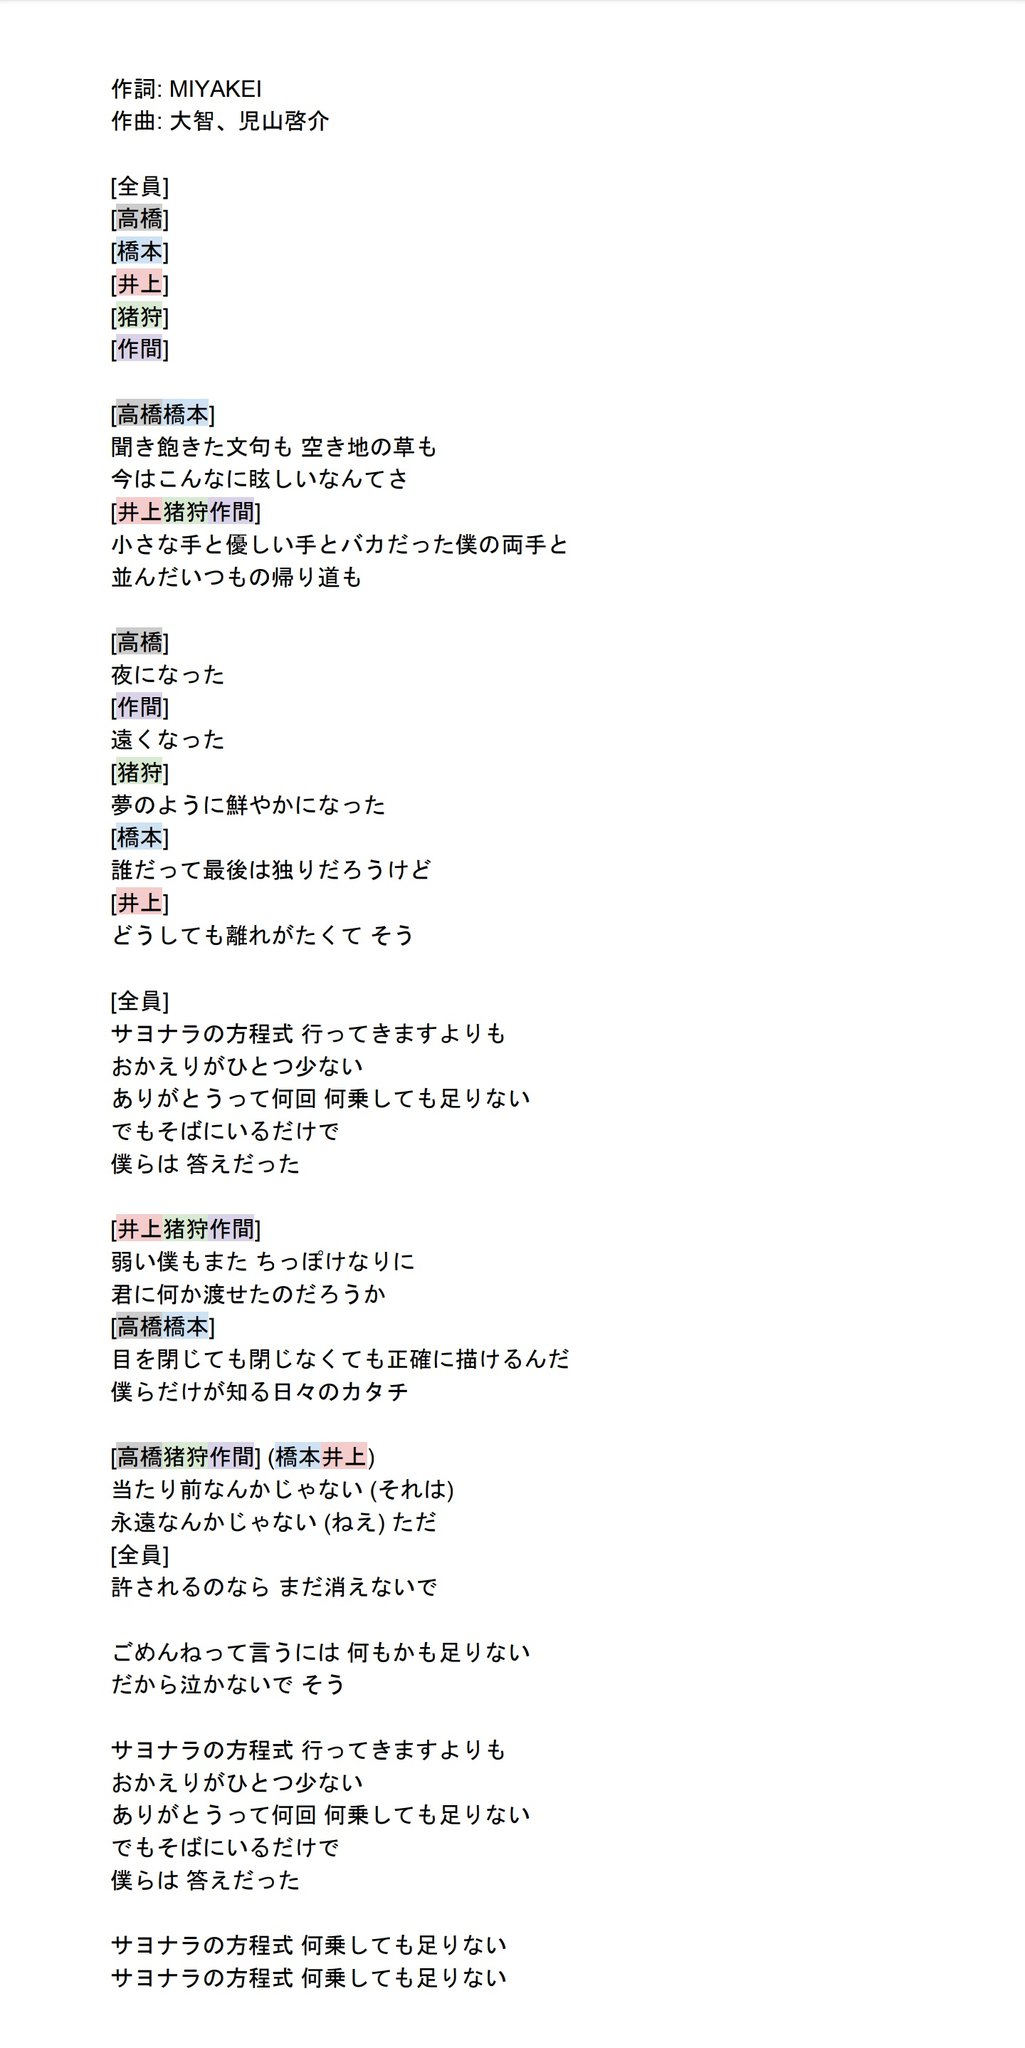 ニノマヱ Hihi Jets サヨナラの方程式 歌詞 歌割り完全版